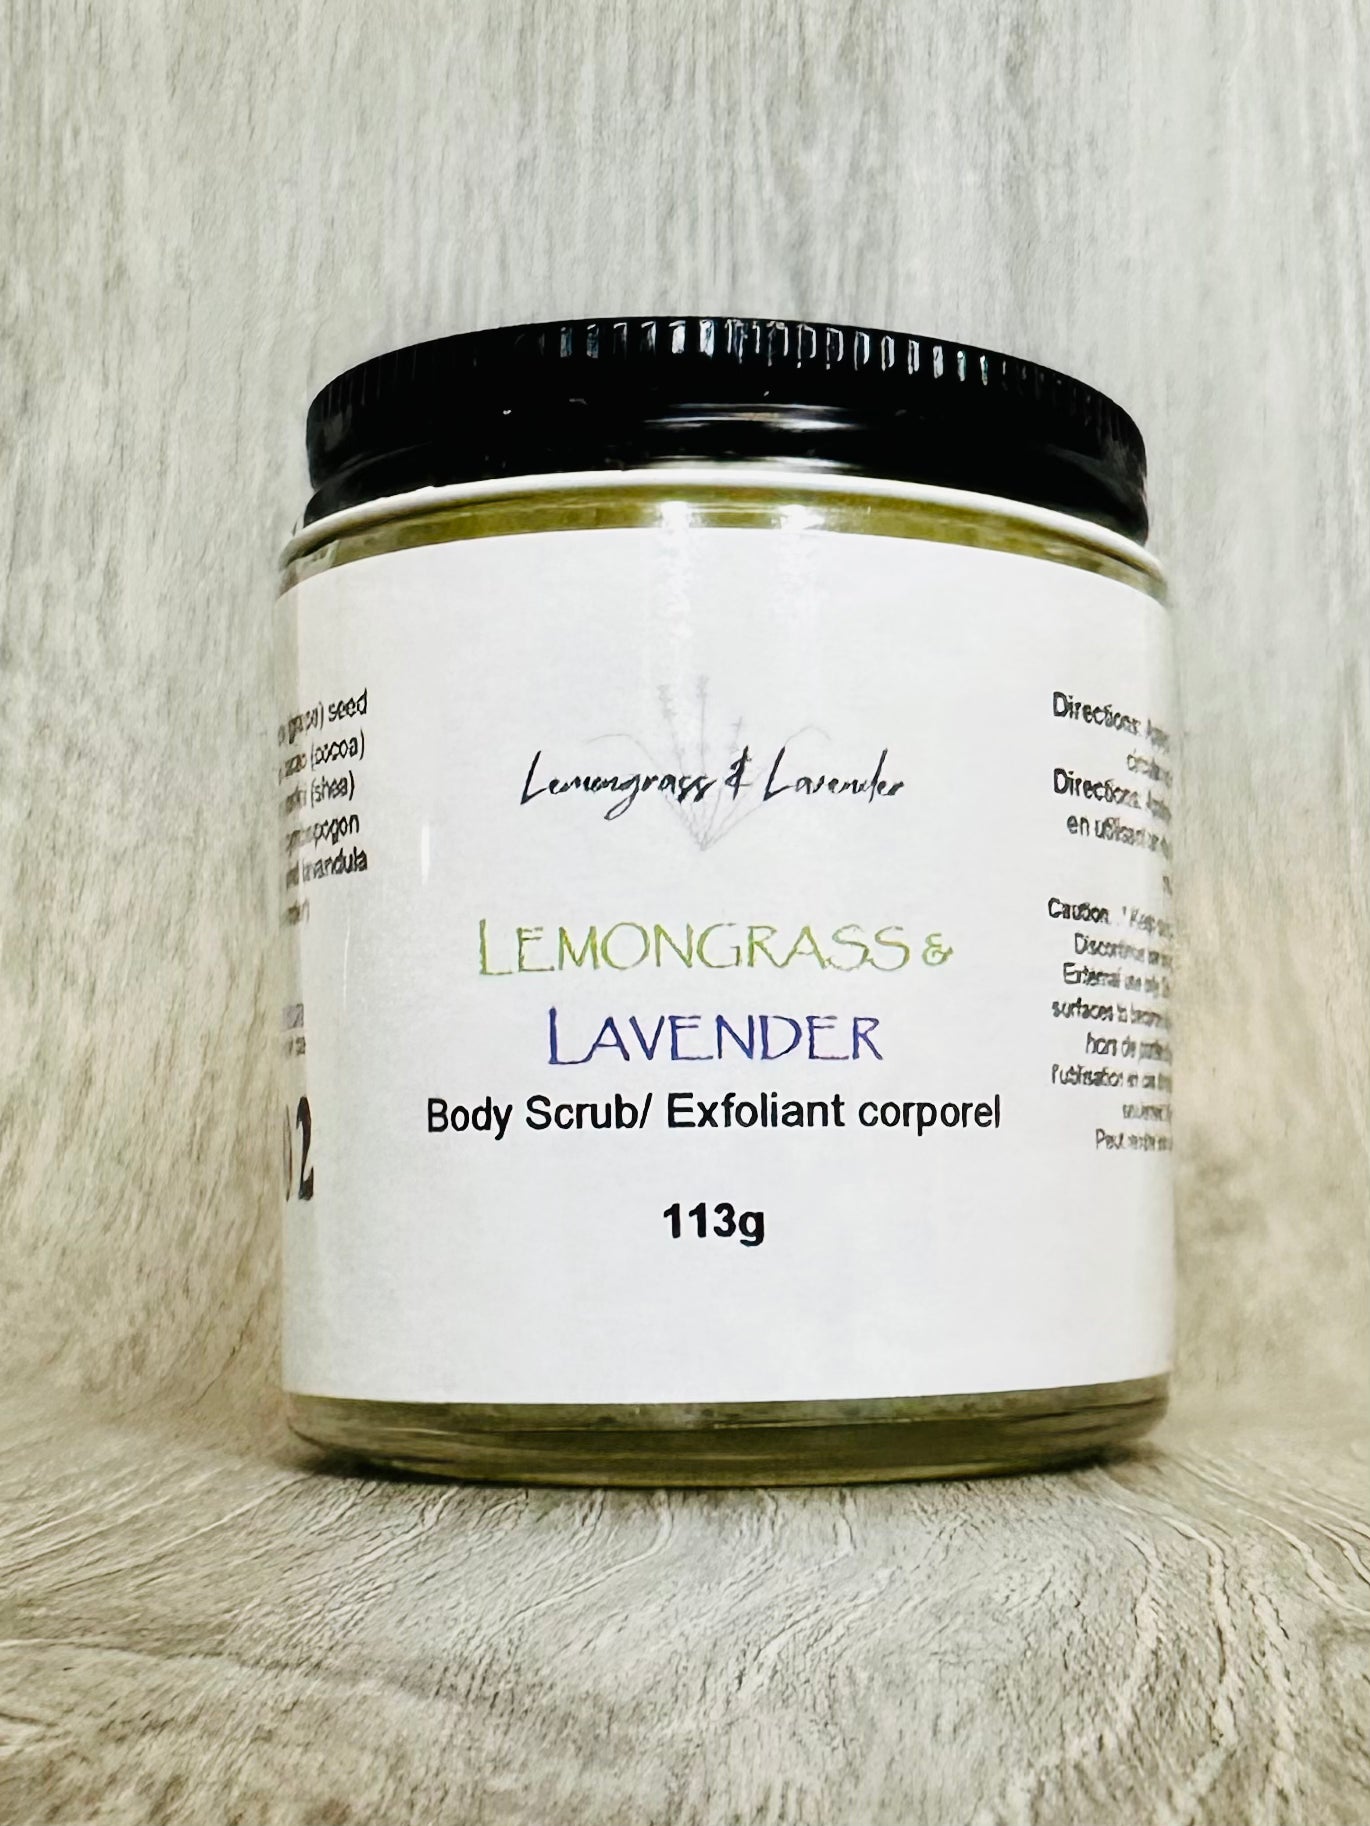 Lemongrass & Lavender body scrub/exfoliant pour corporel